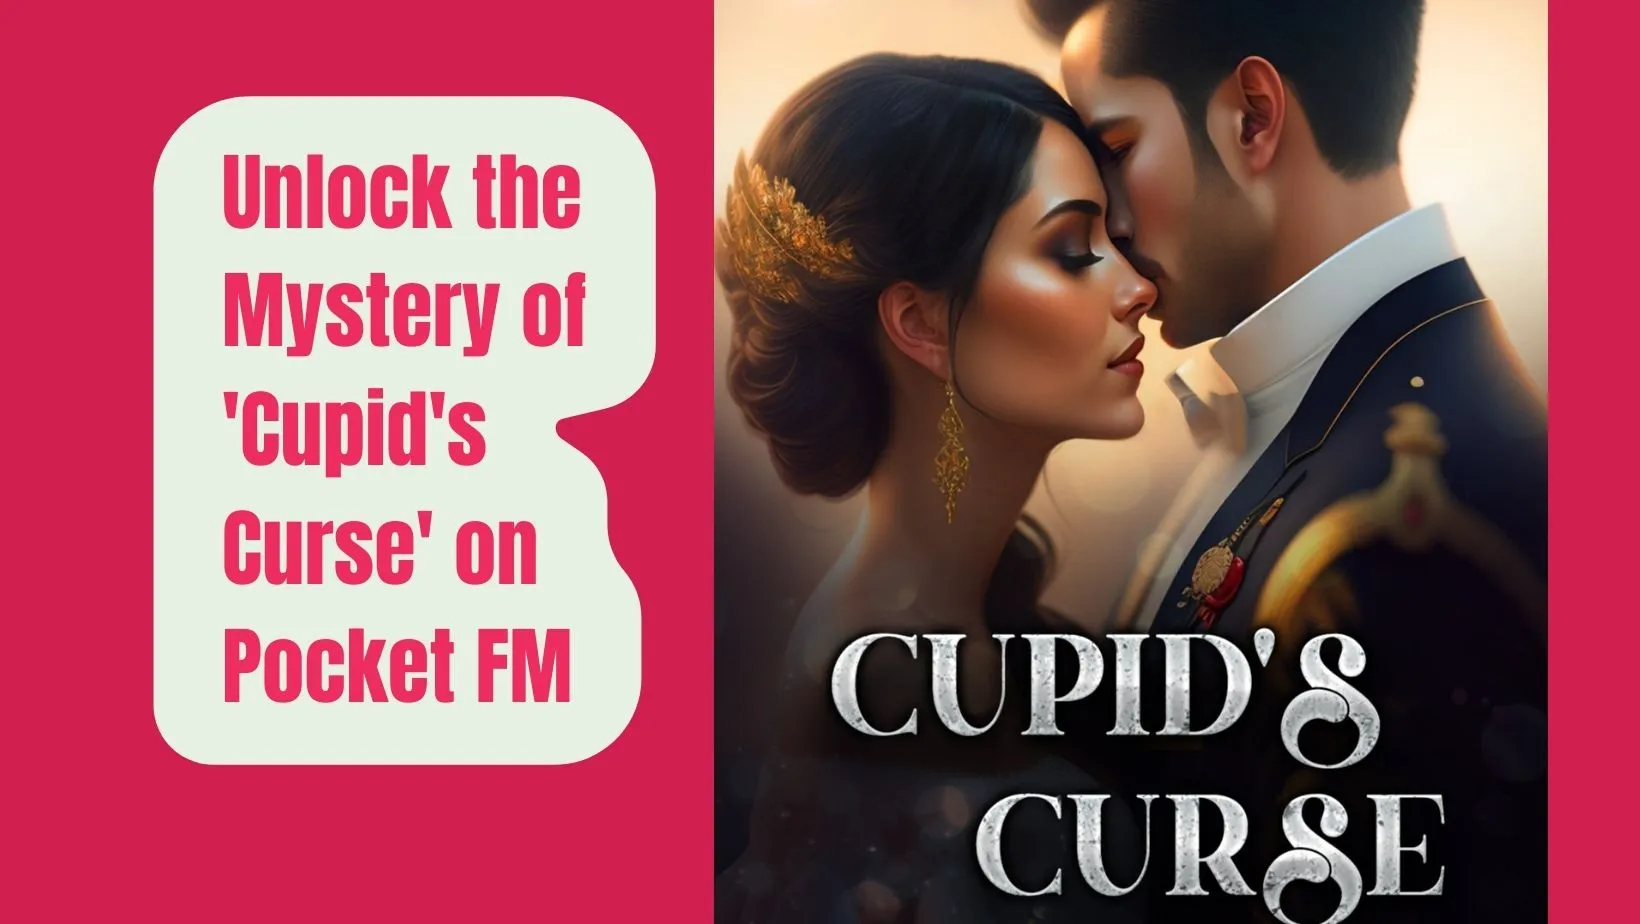 Cupid's curse novel